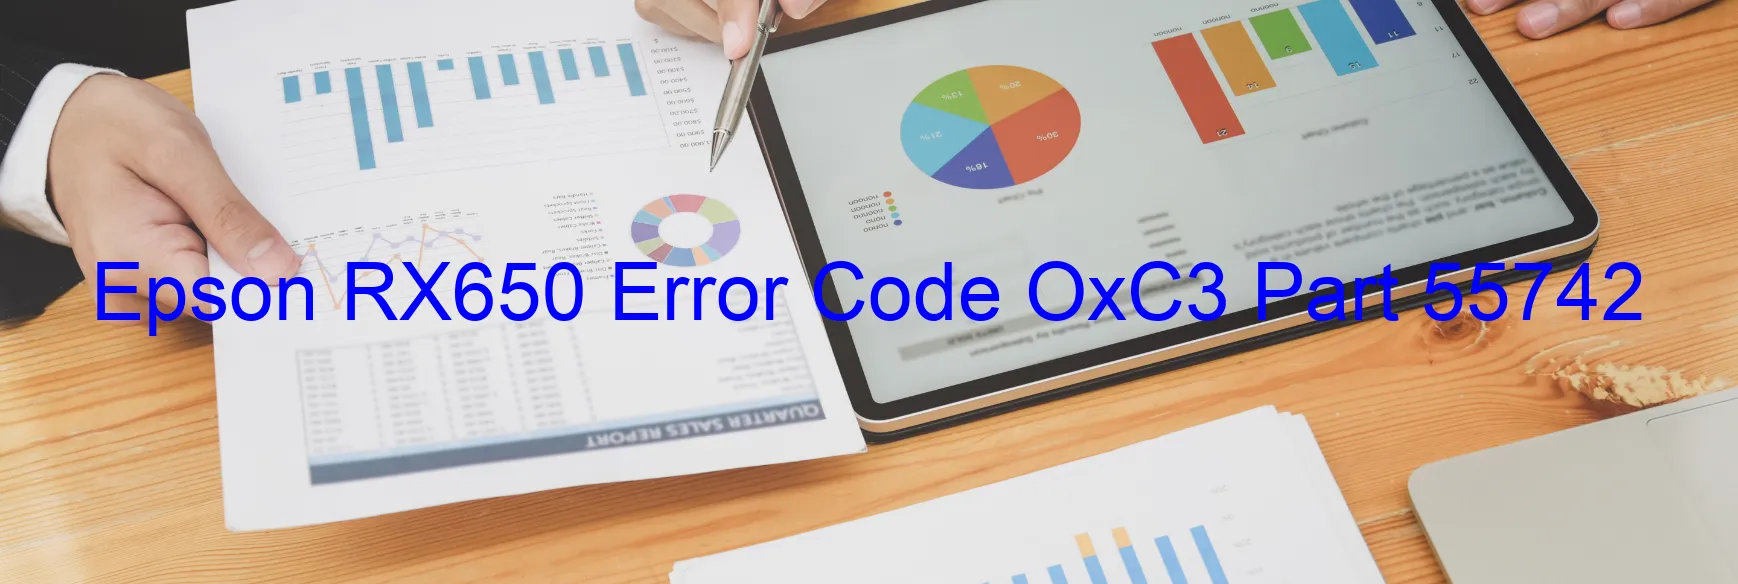 Epson RX650 Error OxC3